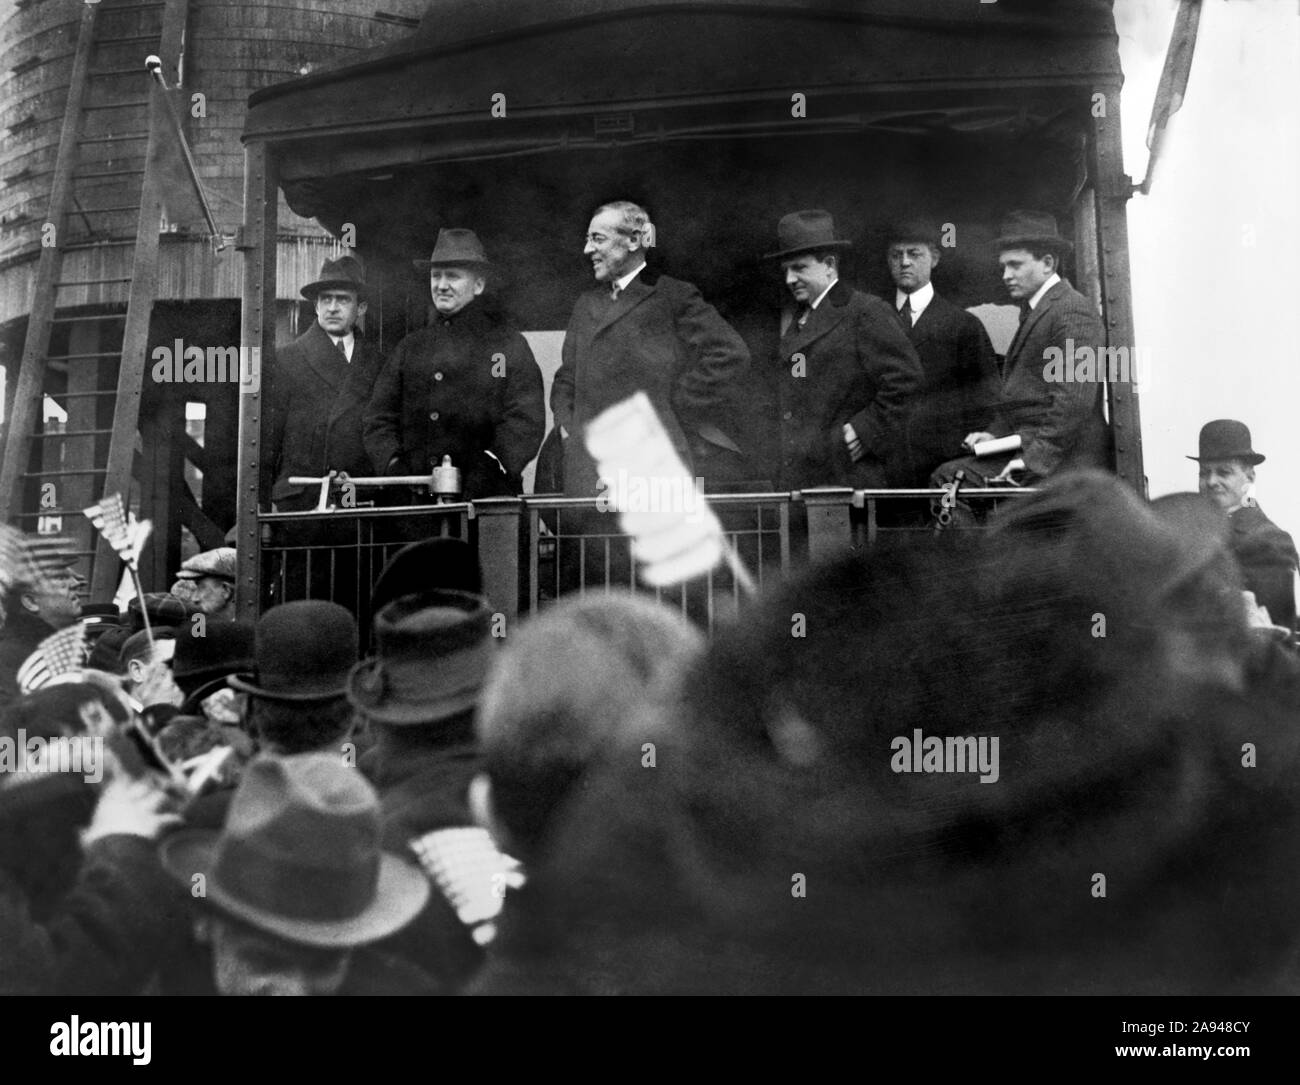 Le président américain Woodrow Wilson parlant de l'arrière de matériel ferroviaire au cours de sa tournée du pays promouvoir sa campagne de préparation, Waukegan, Illinois, USA, International News Photos, Janvier 1916 Banque D'Images